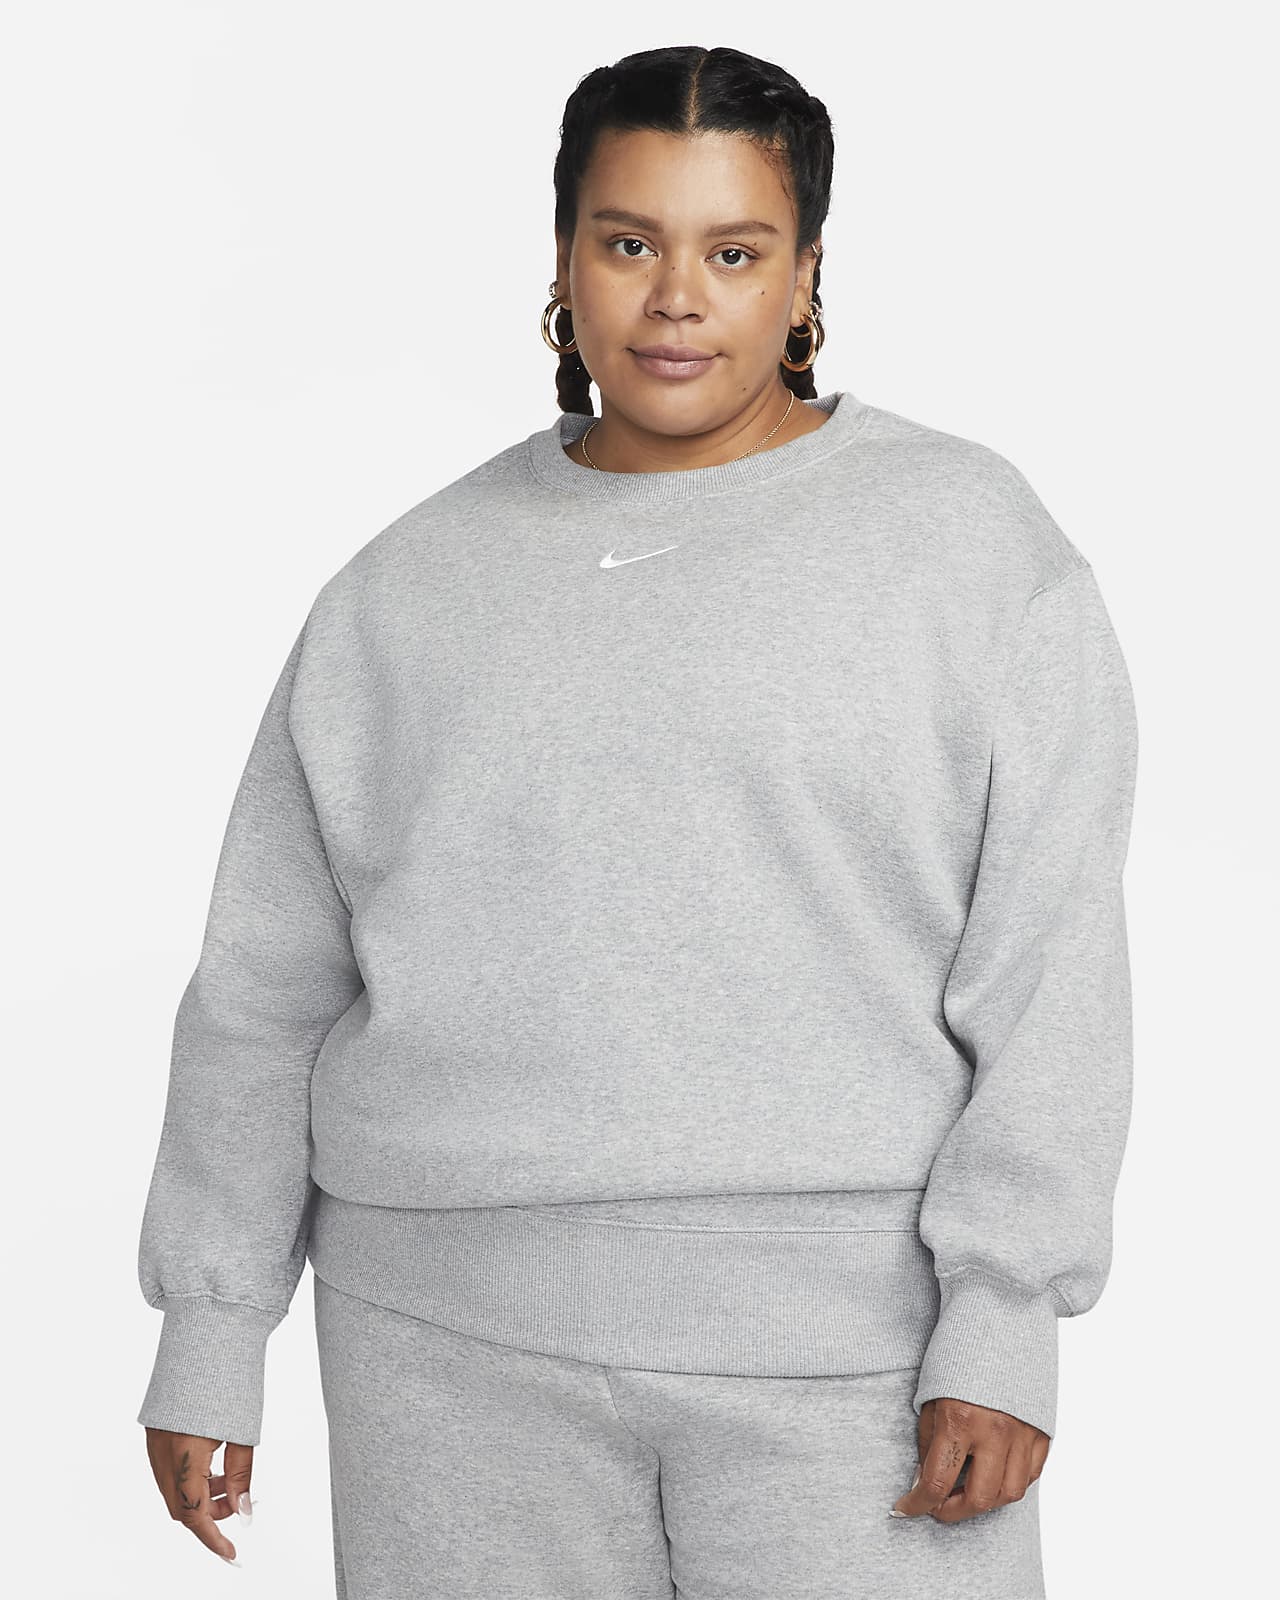 Damska bluza dresowa o luźnym kroju Nike Sportswear Phoenix Fleece (duże rozmiary)